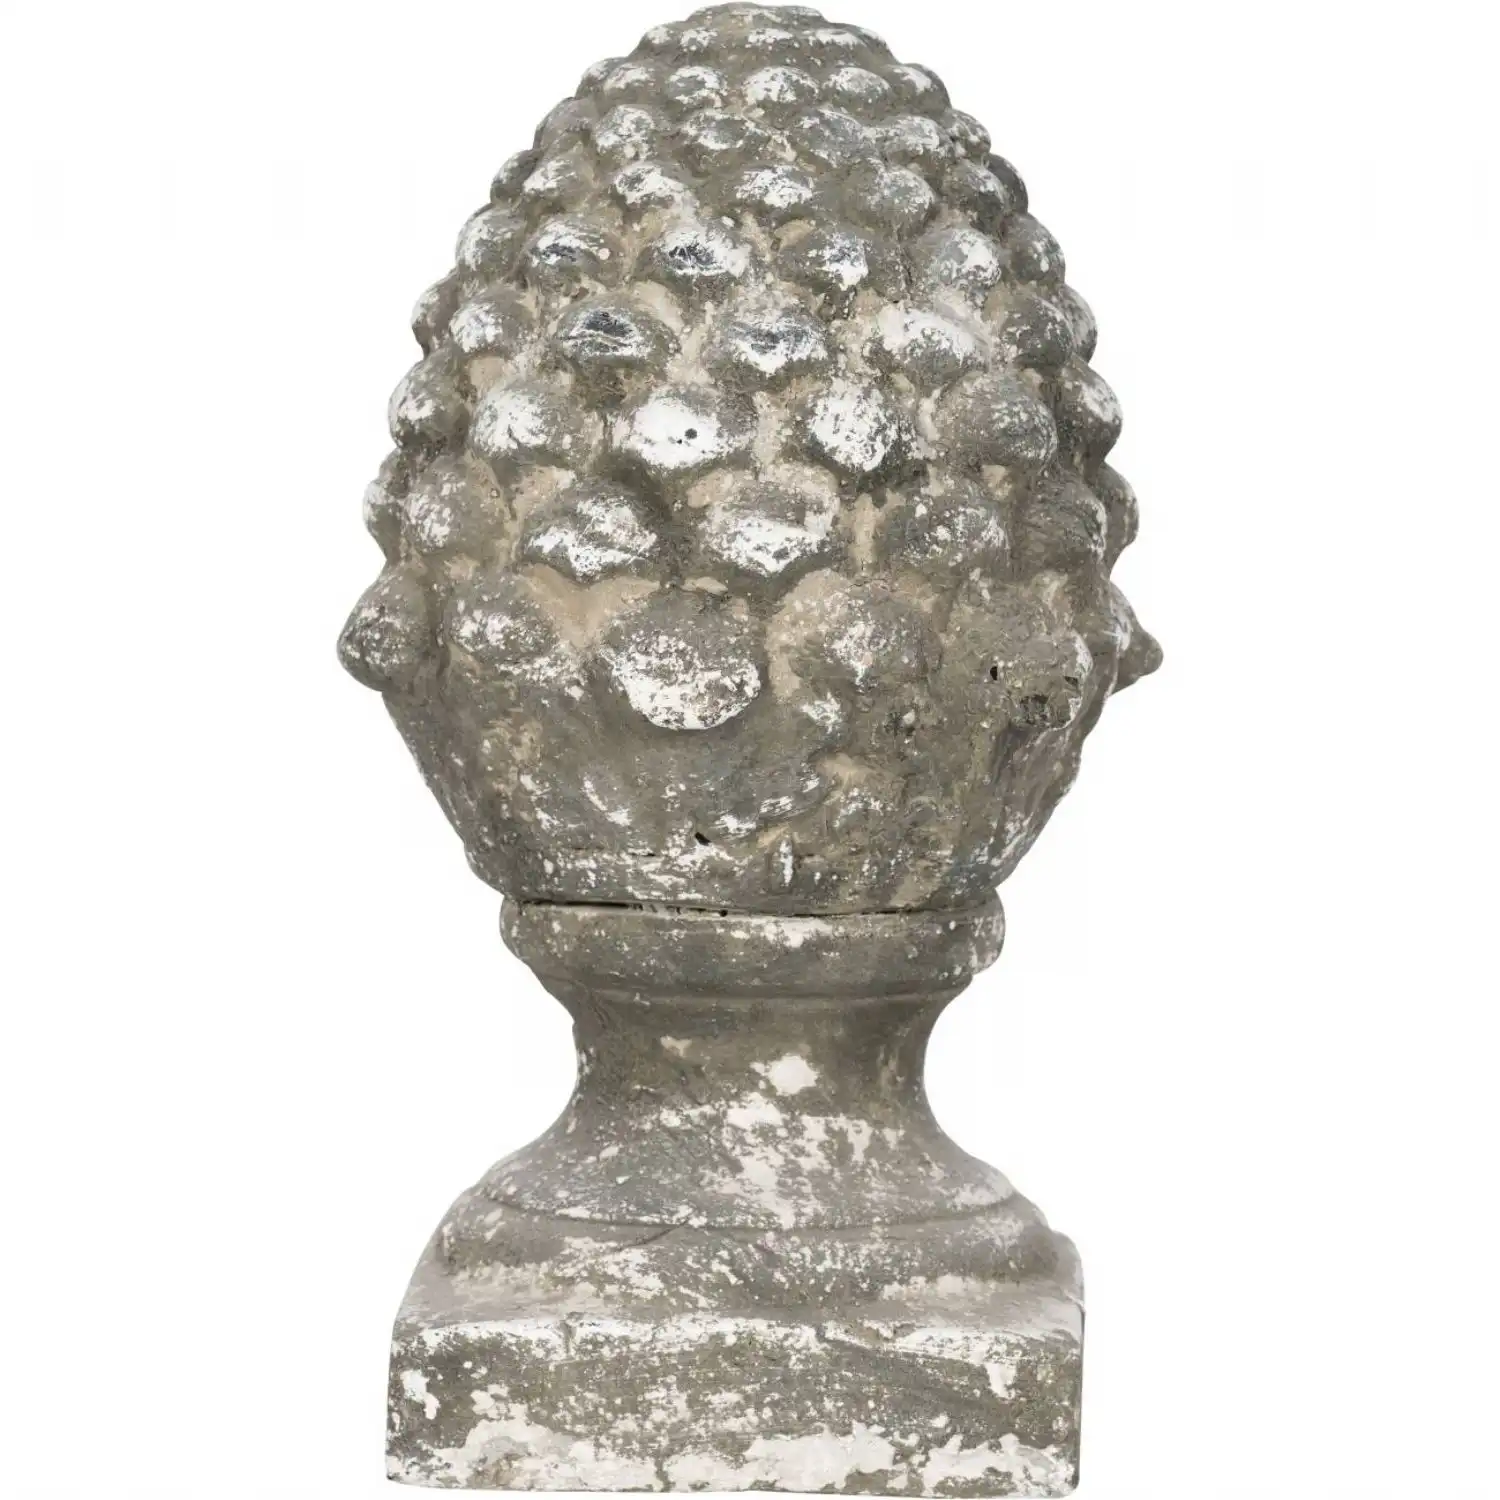 Stone Artichoke Ornament